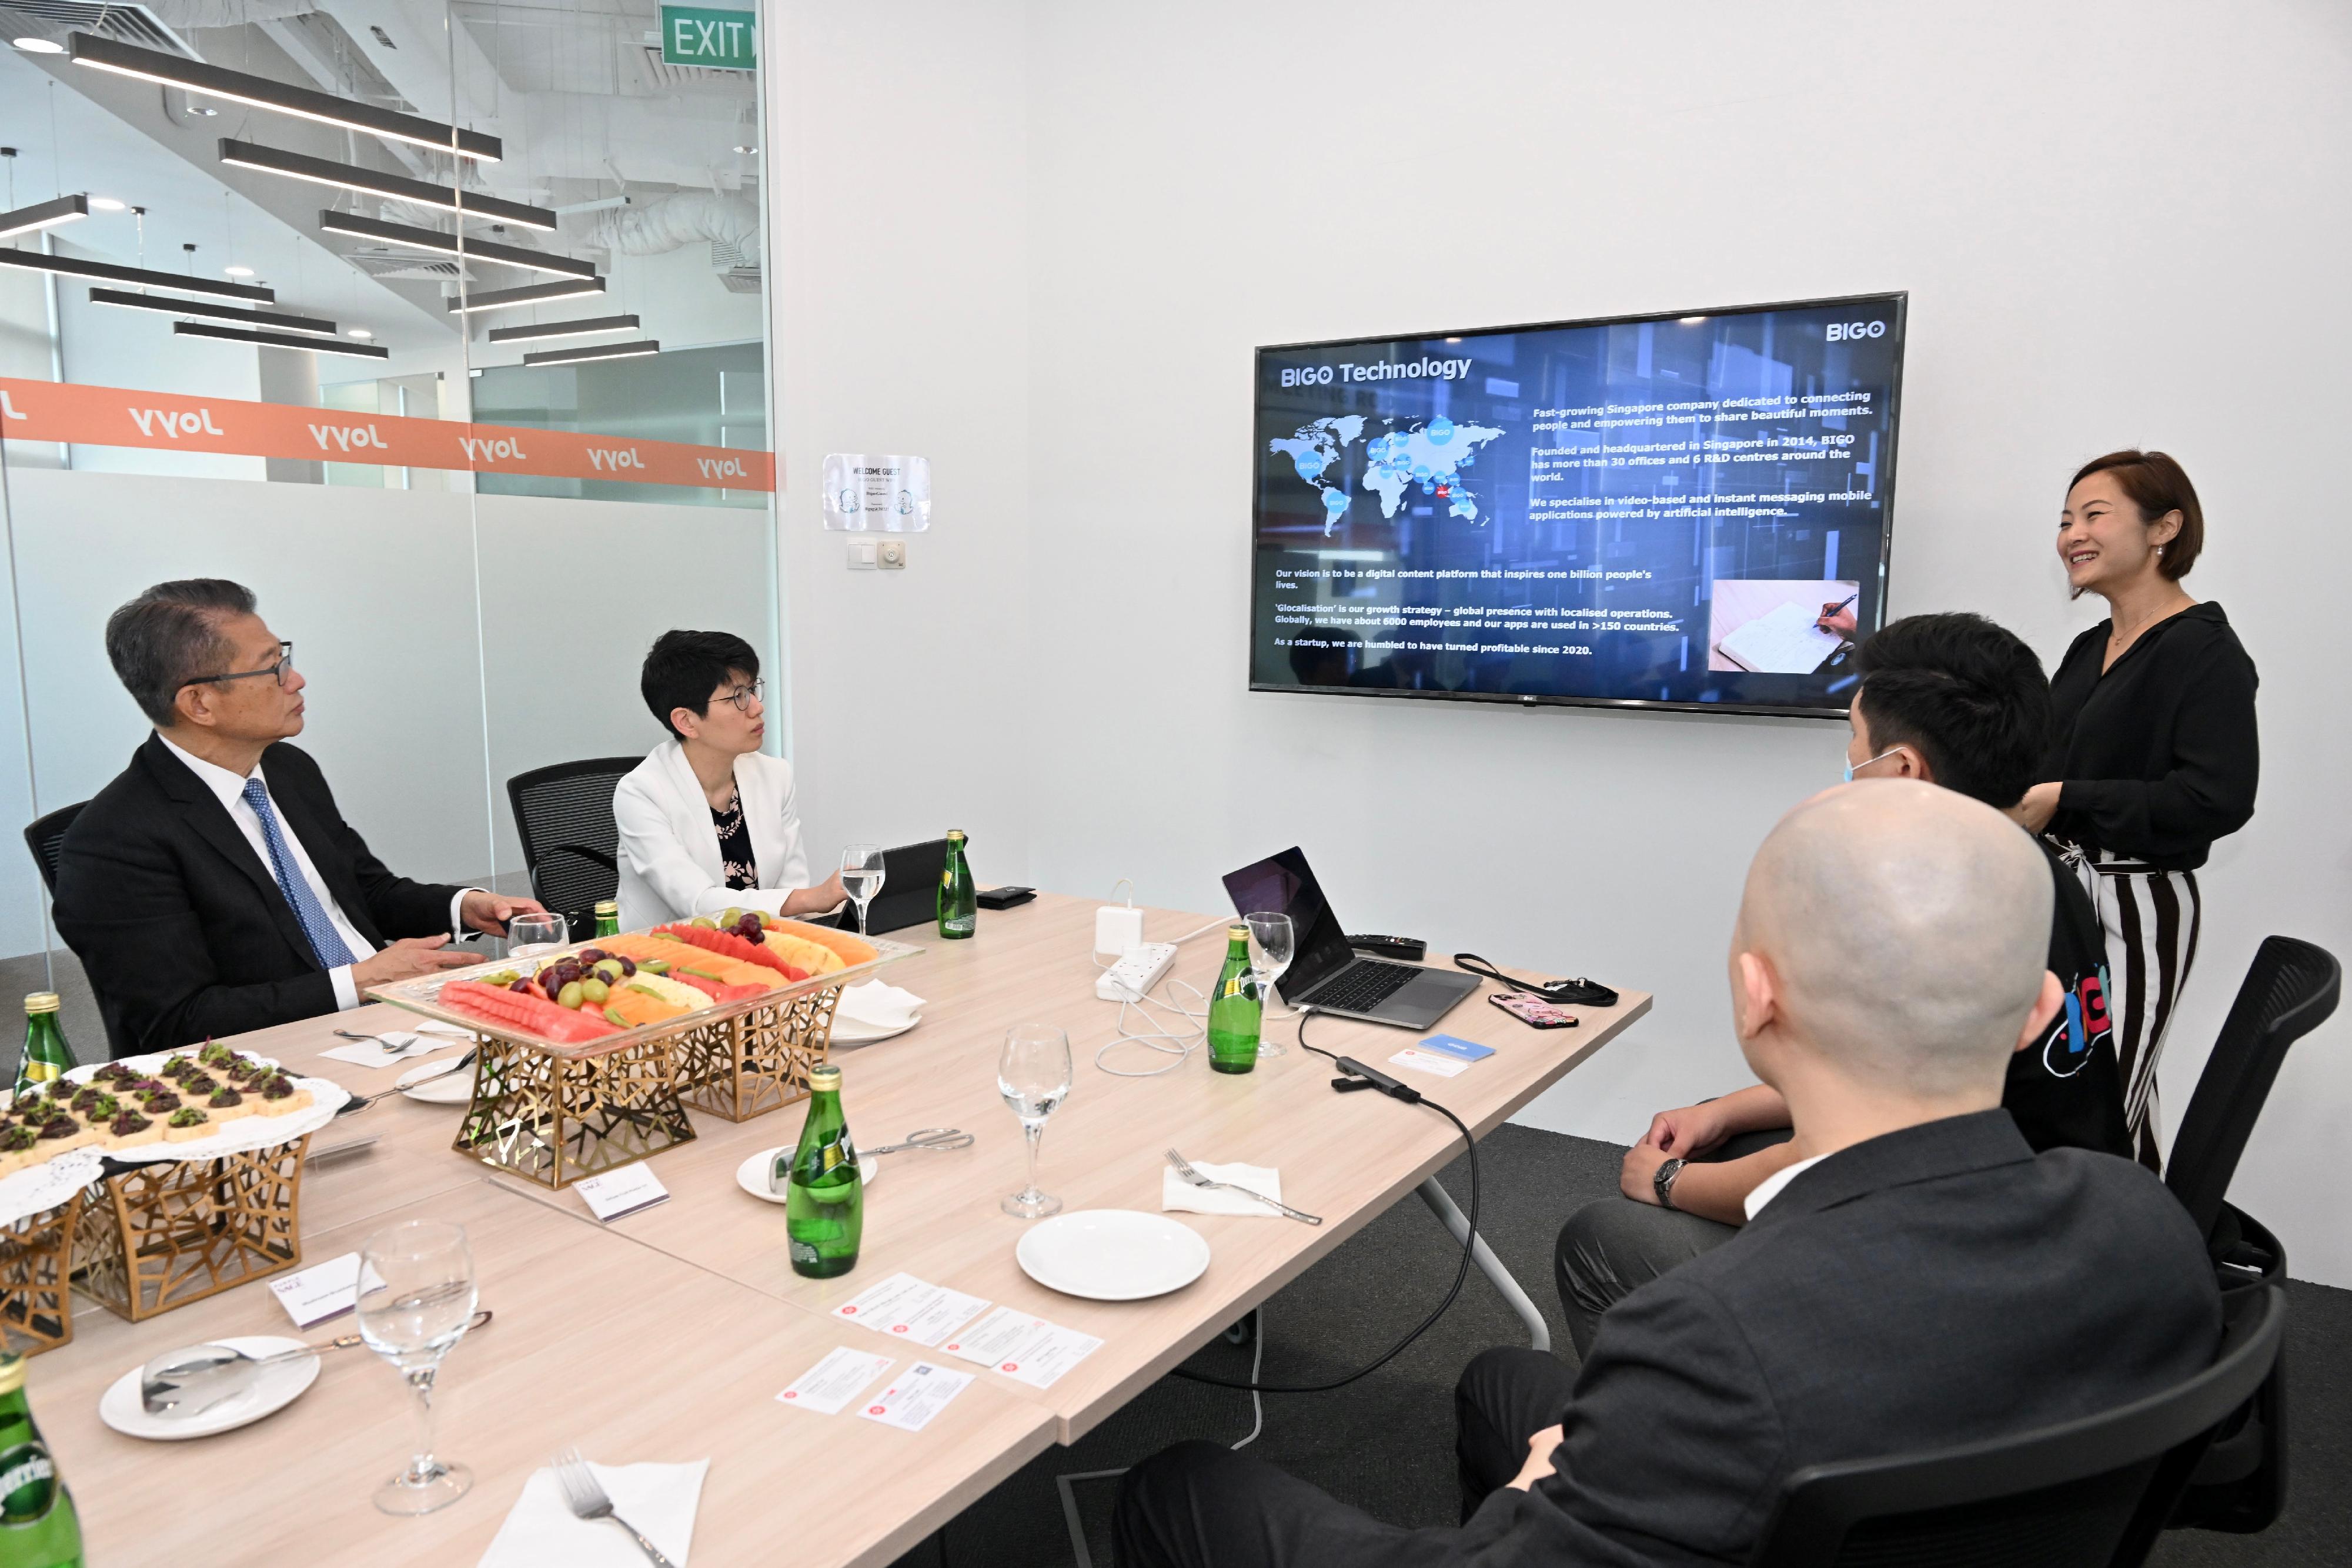 財政司司長陳茂波今日（三月三十日）在新加坡進行最後一日訪問行程。圖示陳茂波（左一）與互聯網科技公司的負責人會面，了解他們的業務和科技應用，並鼓勵他們到香港發展業務。